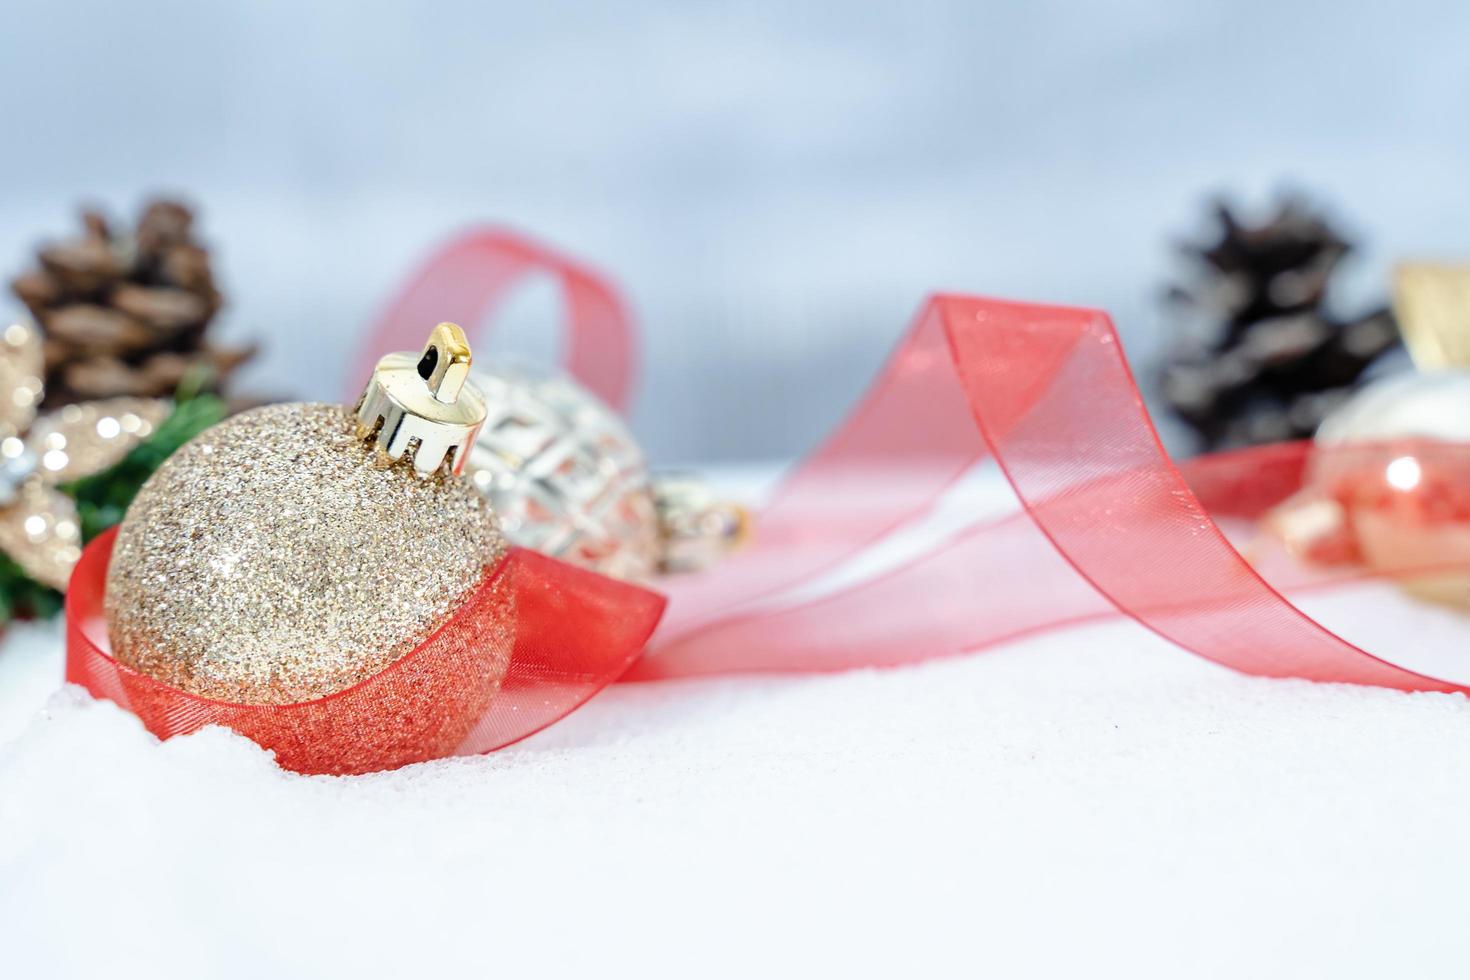 jul av vinter- - jul bollar med band på snö, vinter- högtider begrepp. jul röd bollar, gyllene bollar, tall och snöflingor dekorationer i snö bakgrund foto